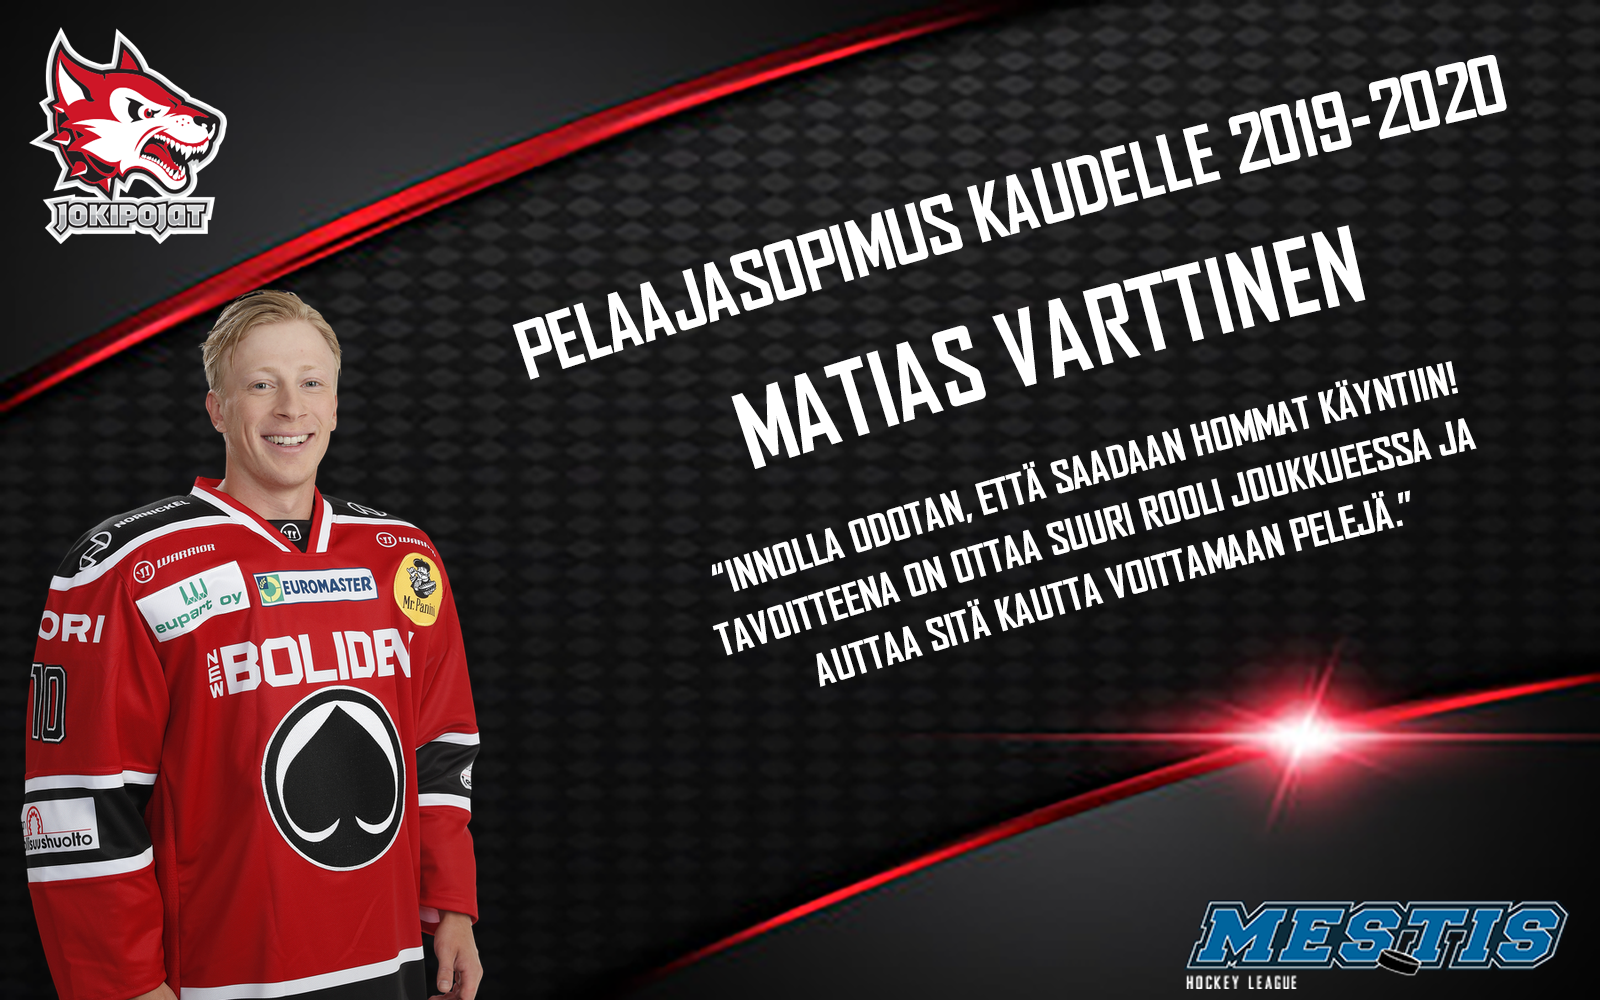 Jokipoikien hyökkäys vahvistuu Matias Varttisella!